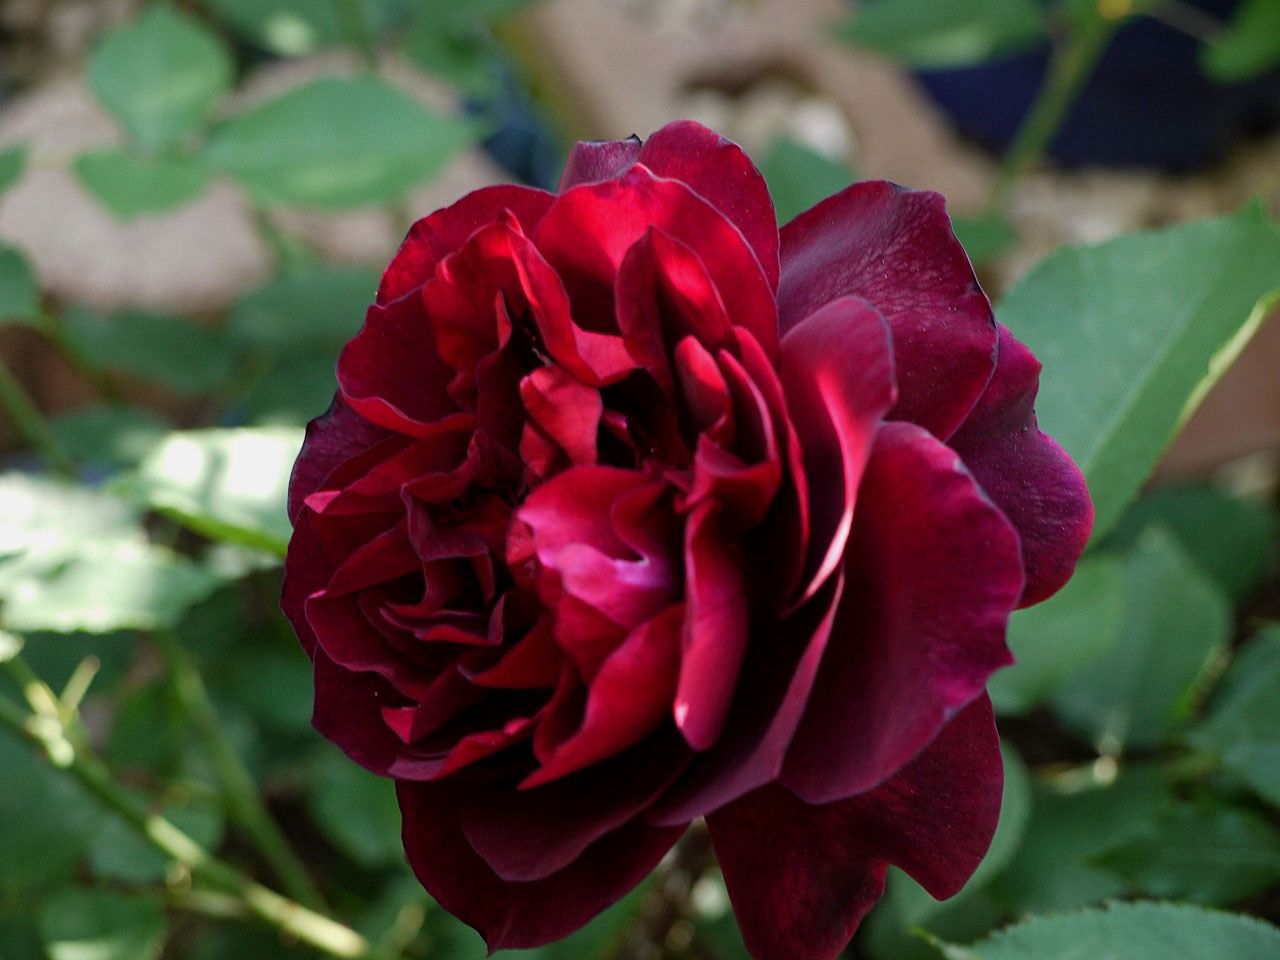 音符のように 美 音 のつぼみ バラの初開花4品種17 番目 バラの美と香りを求めて 楽天ブログ